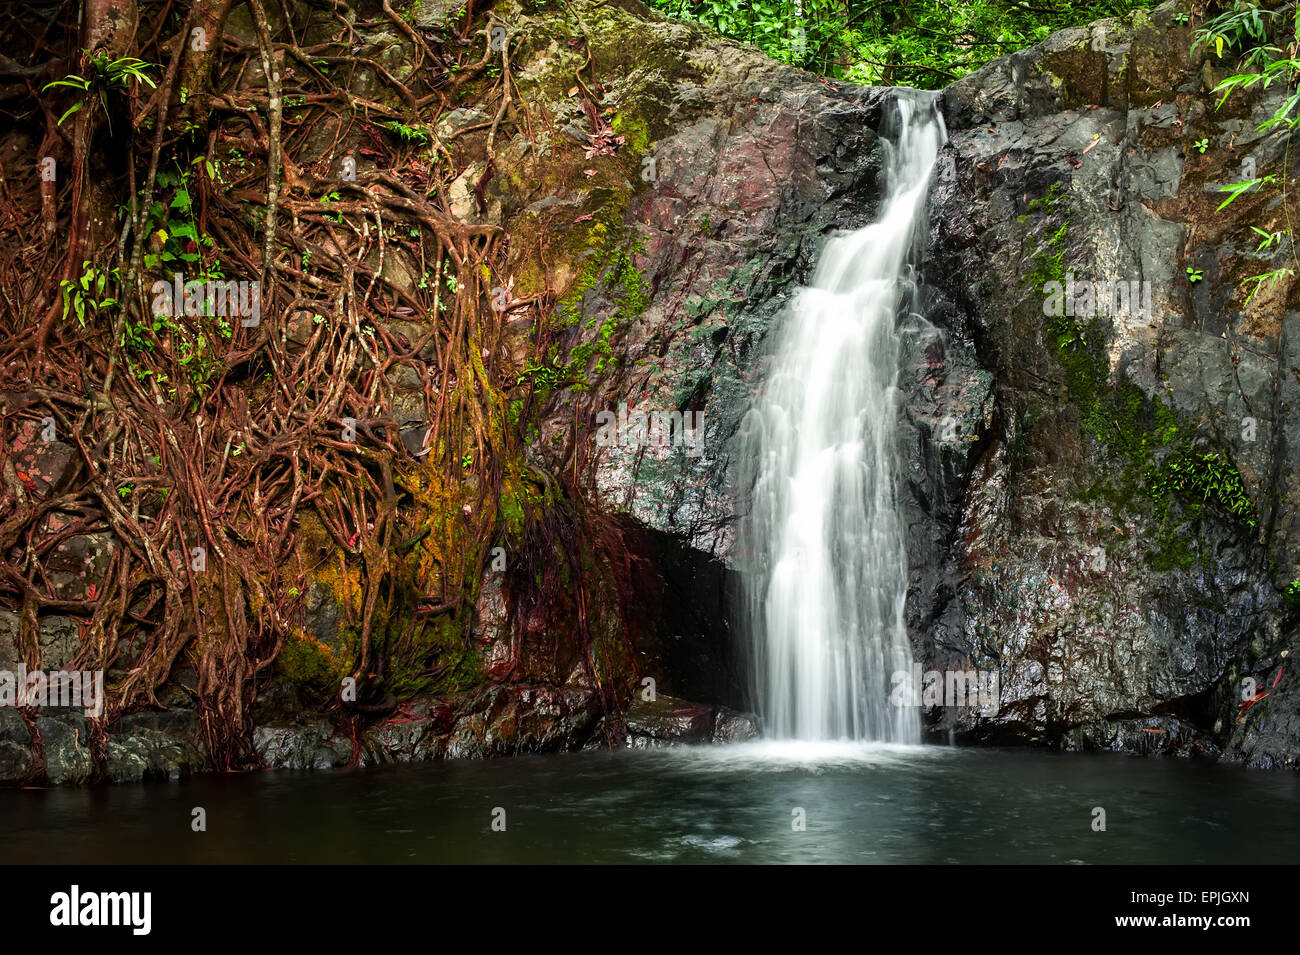 Paisaje de bosque tropical con plantas de la selva y el flujo de agua de una pequeña cascada. Vang Vieng, en Laos Foto de stock